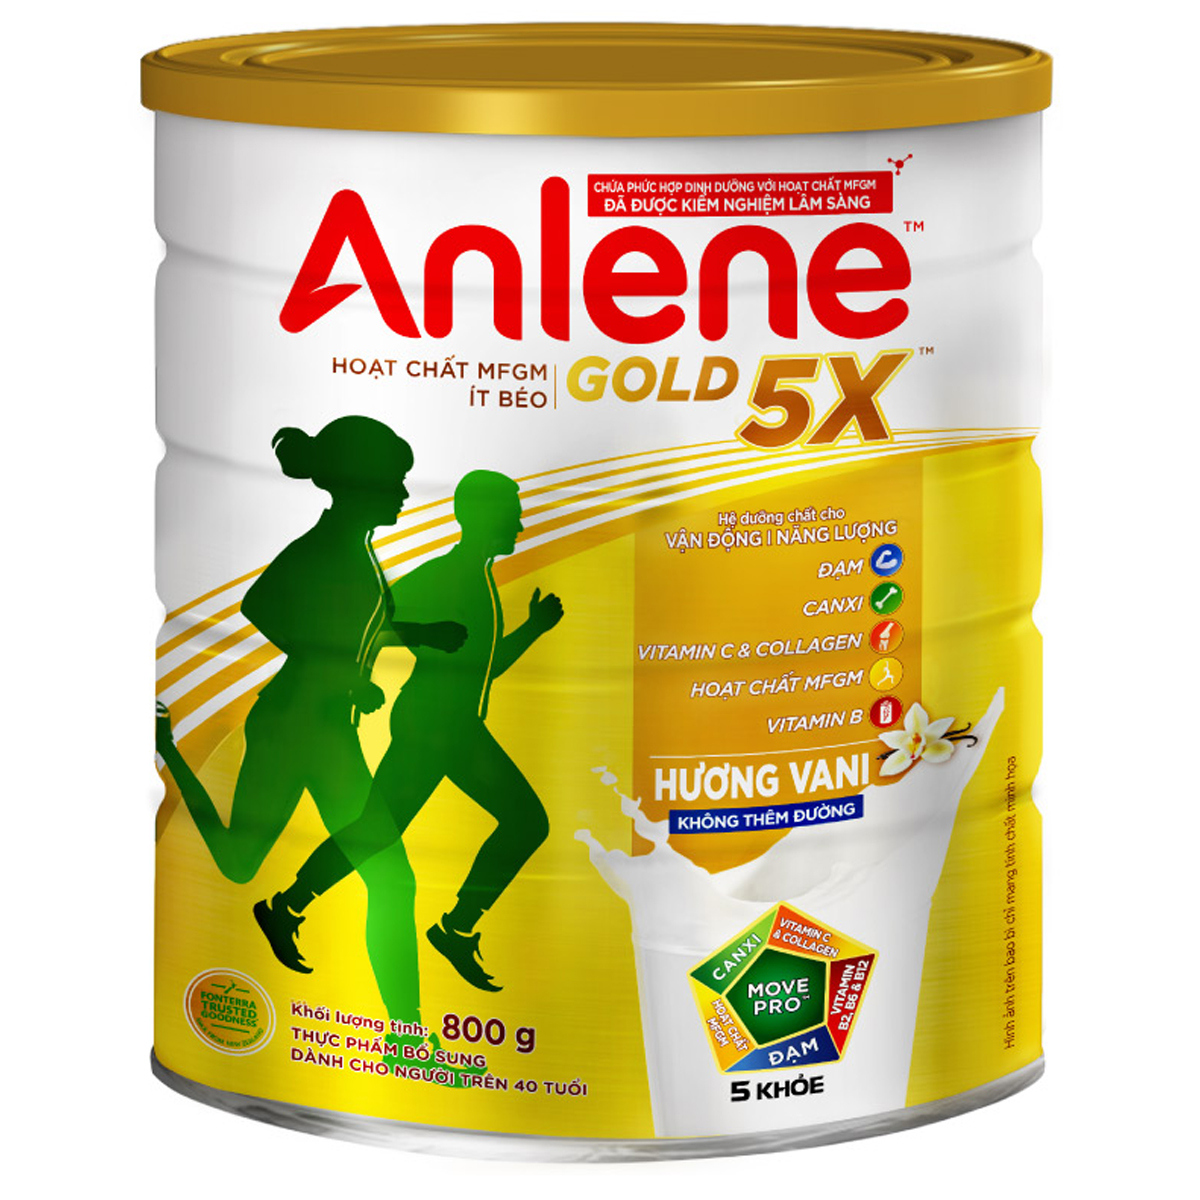 Combo 02 Sữa Bột Anlene Gold 5X Hương Vanilla (Hộp thiếc 800g) - Tặng kệ 2 tầng